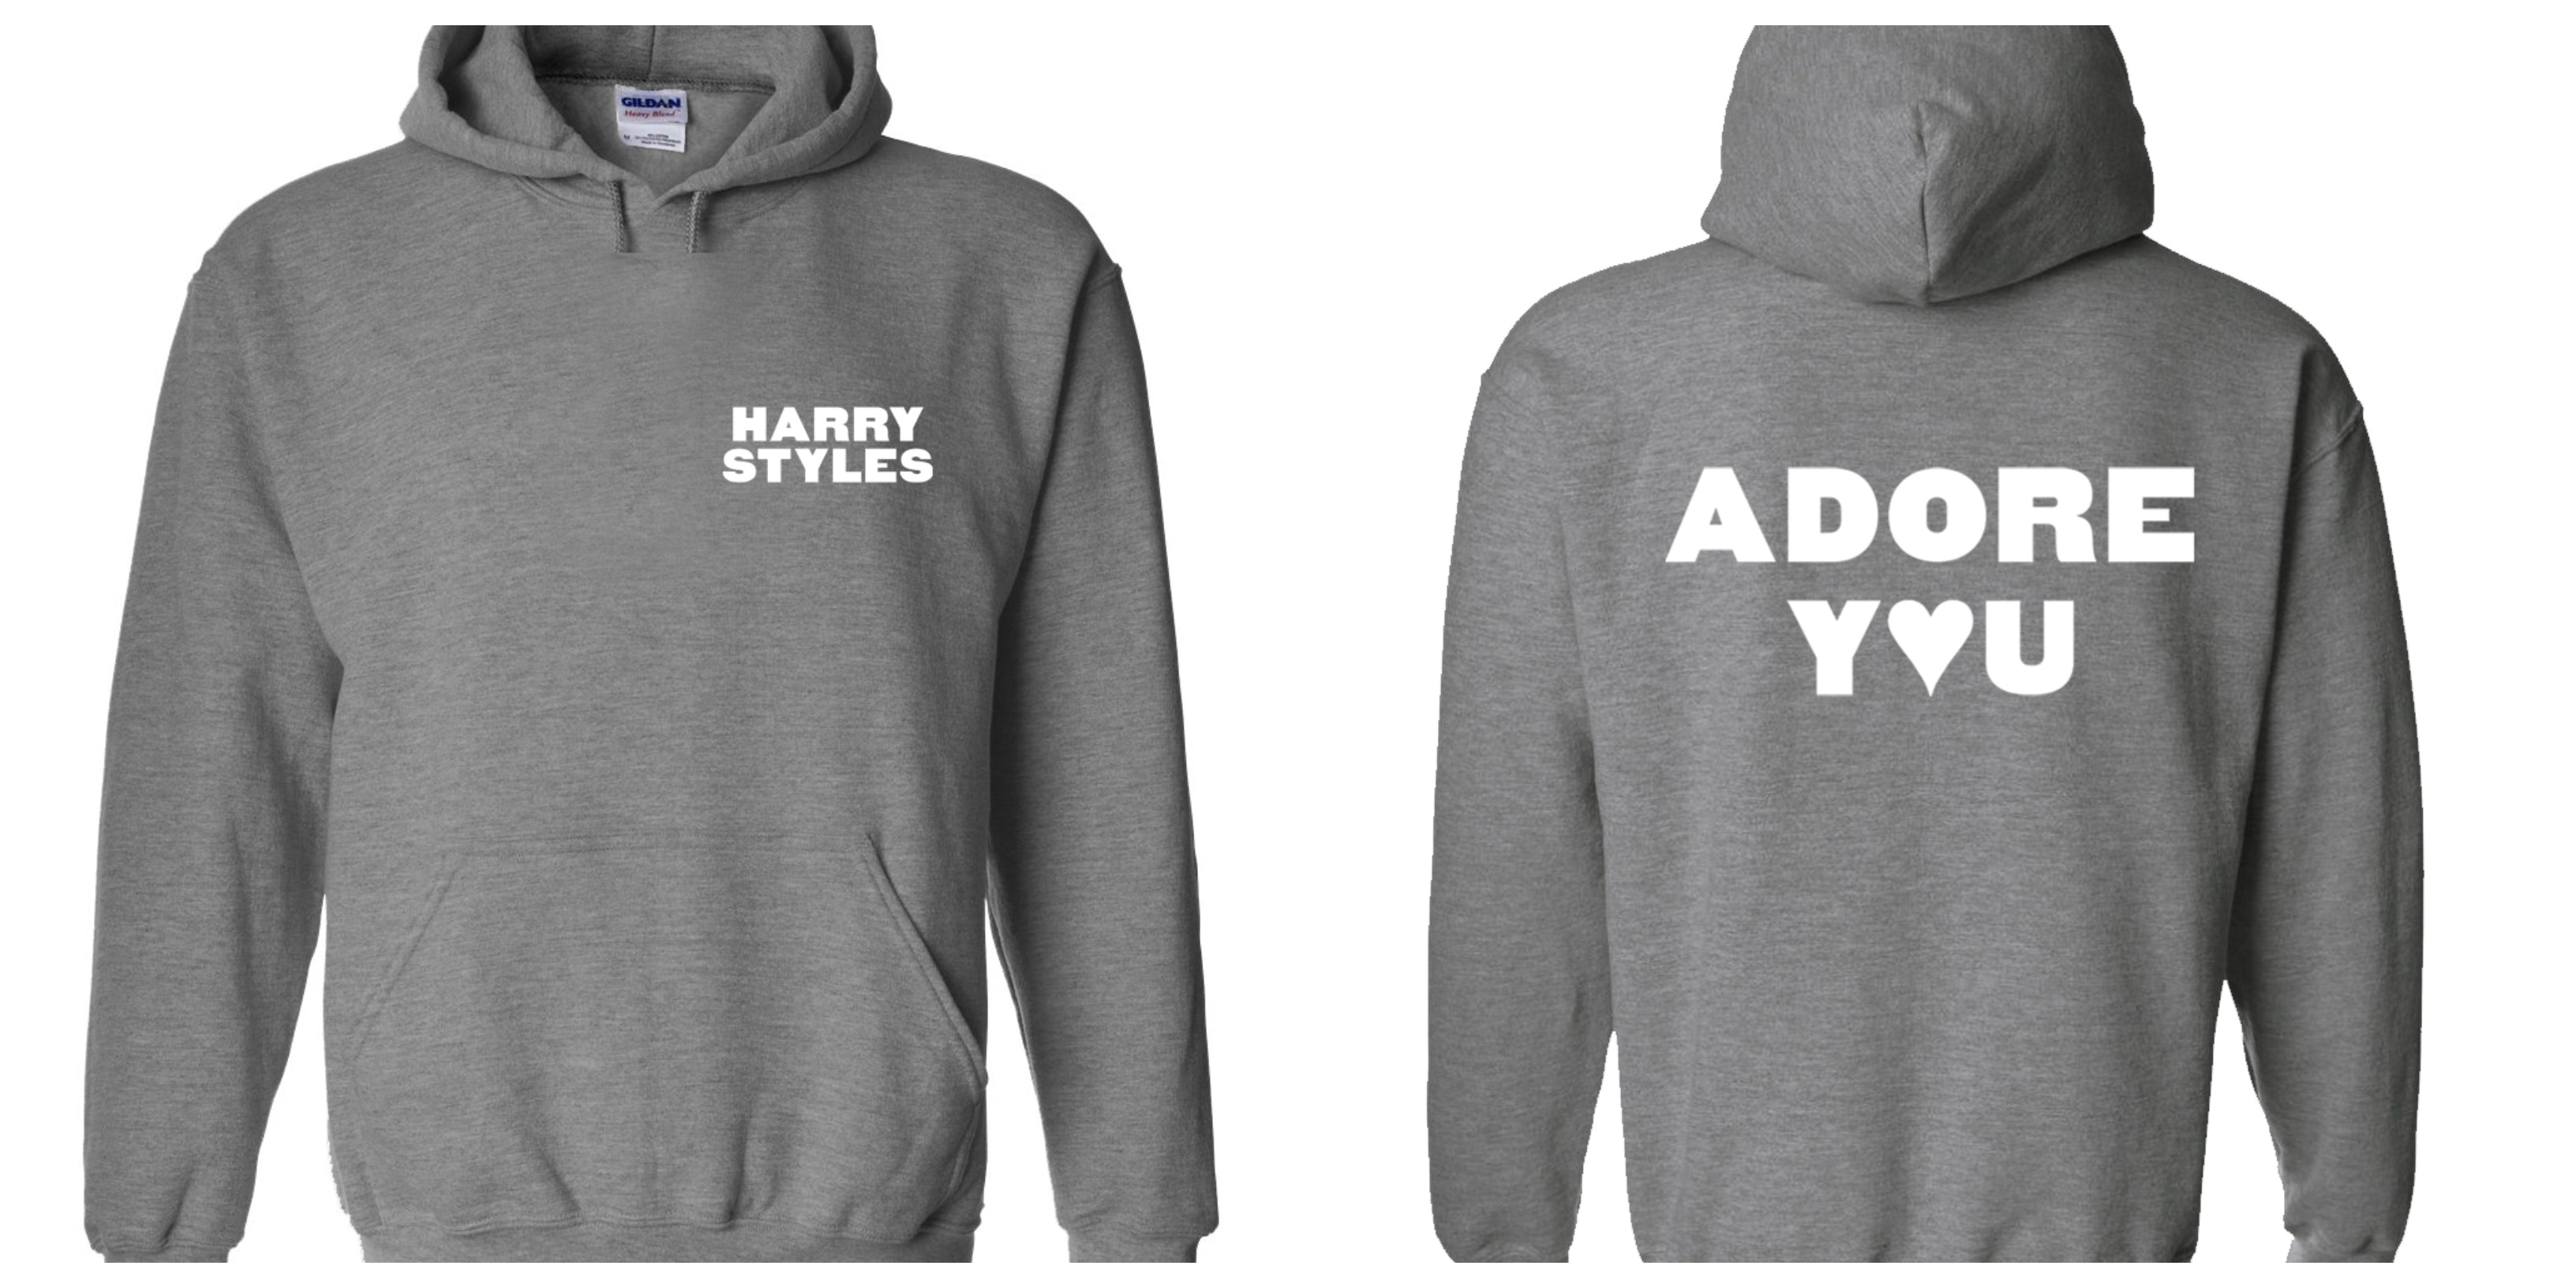 Harry Styles "HS / Adore You BACK" Hoodie Sweatshirt (